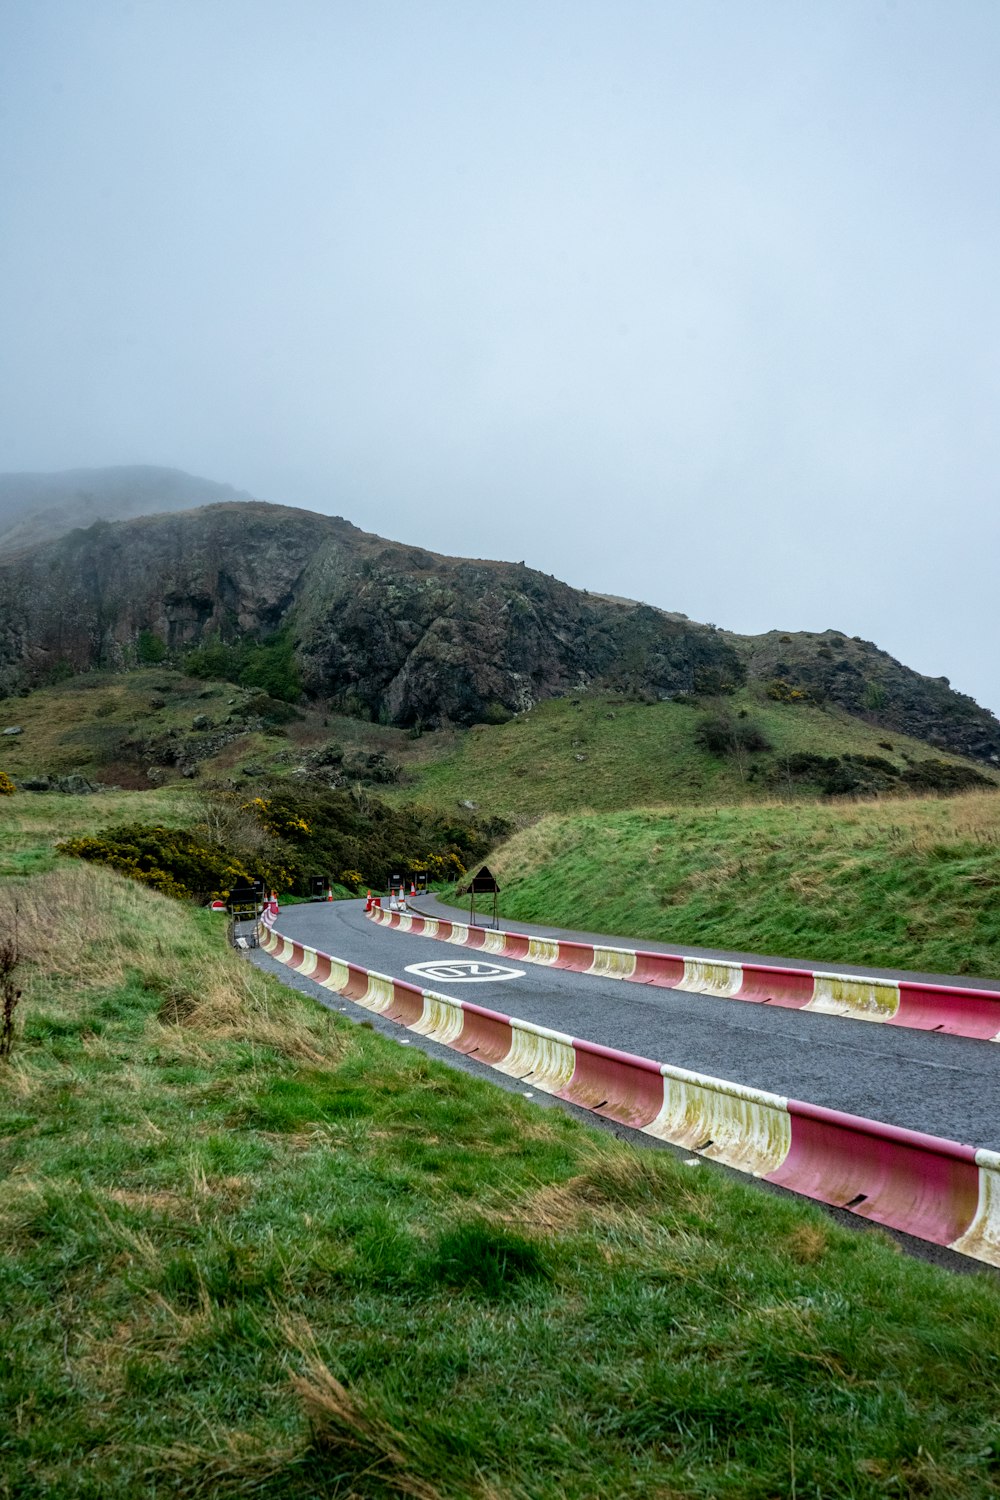 Una strada curva con una montagna sullo sfondo